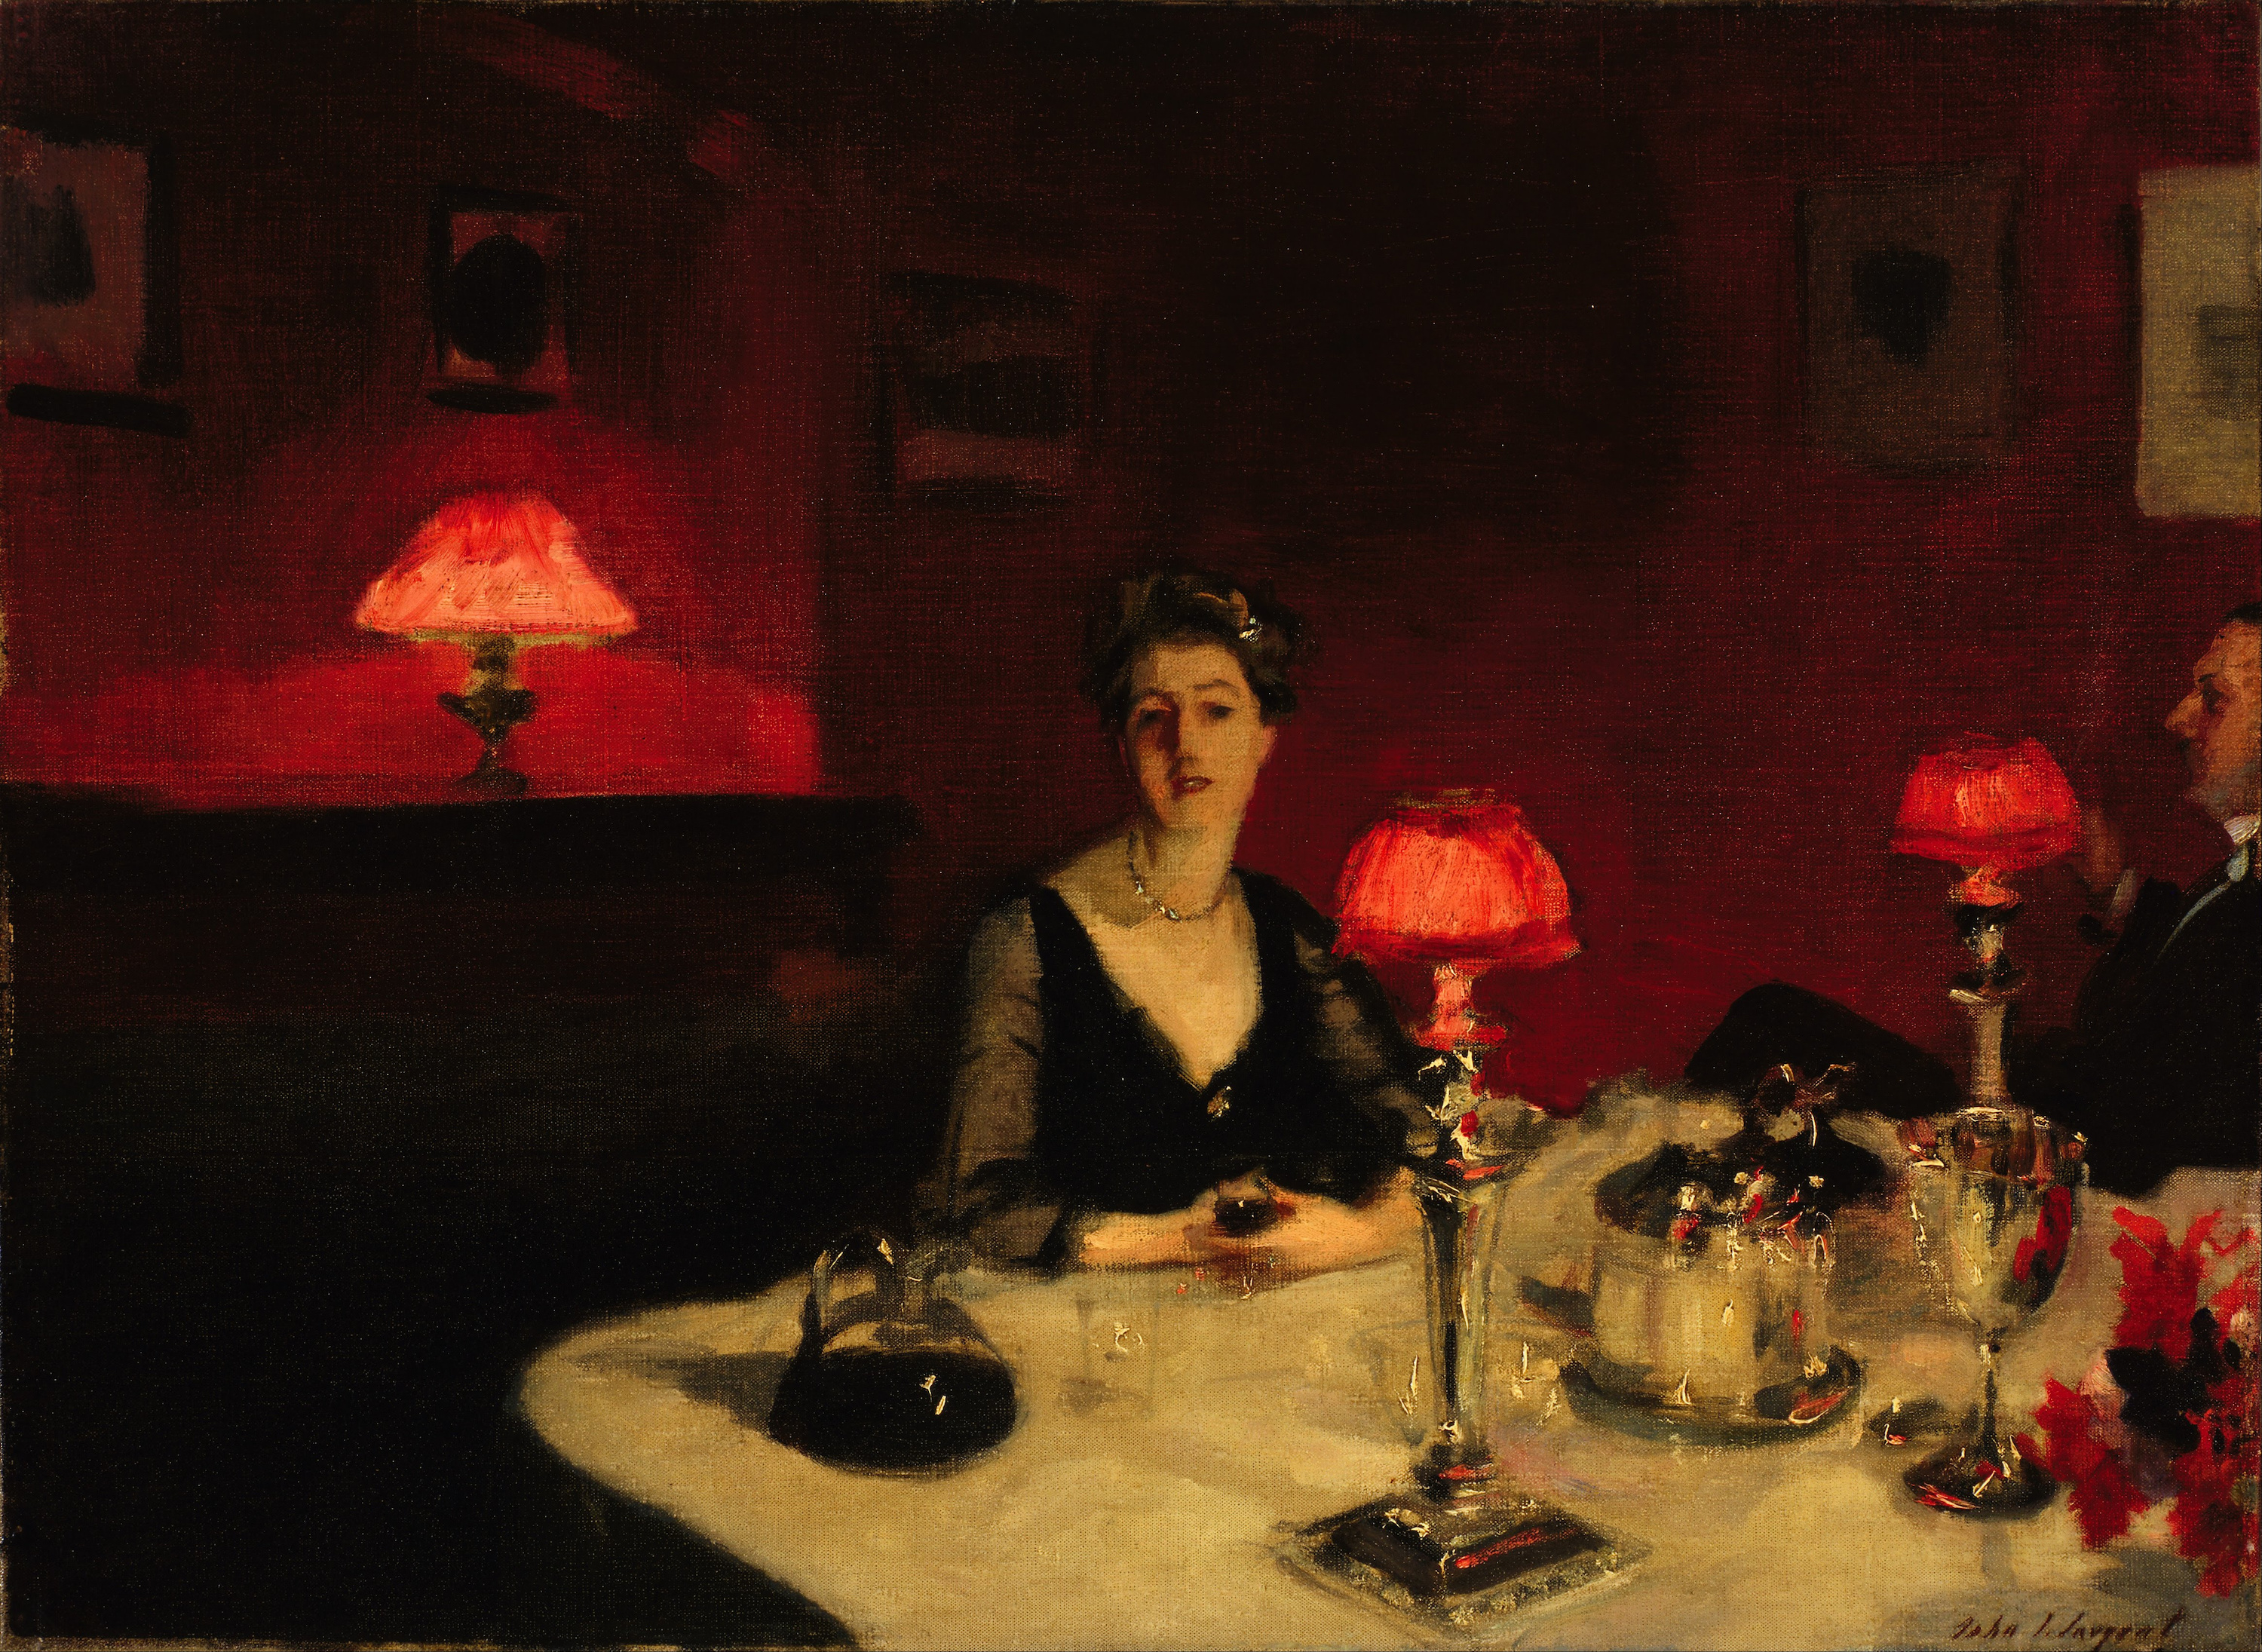 夜晚的餐桌 by 约翰 · 辛格 · 萨金特 - 1884 - 51.4 x 66.7 cm 